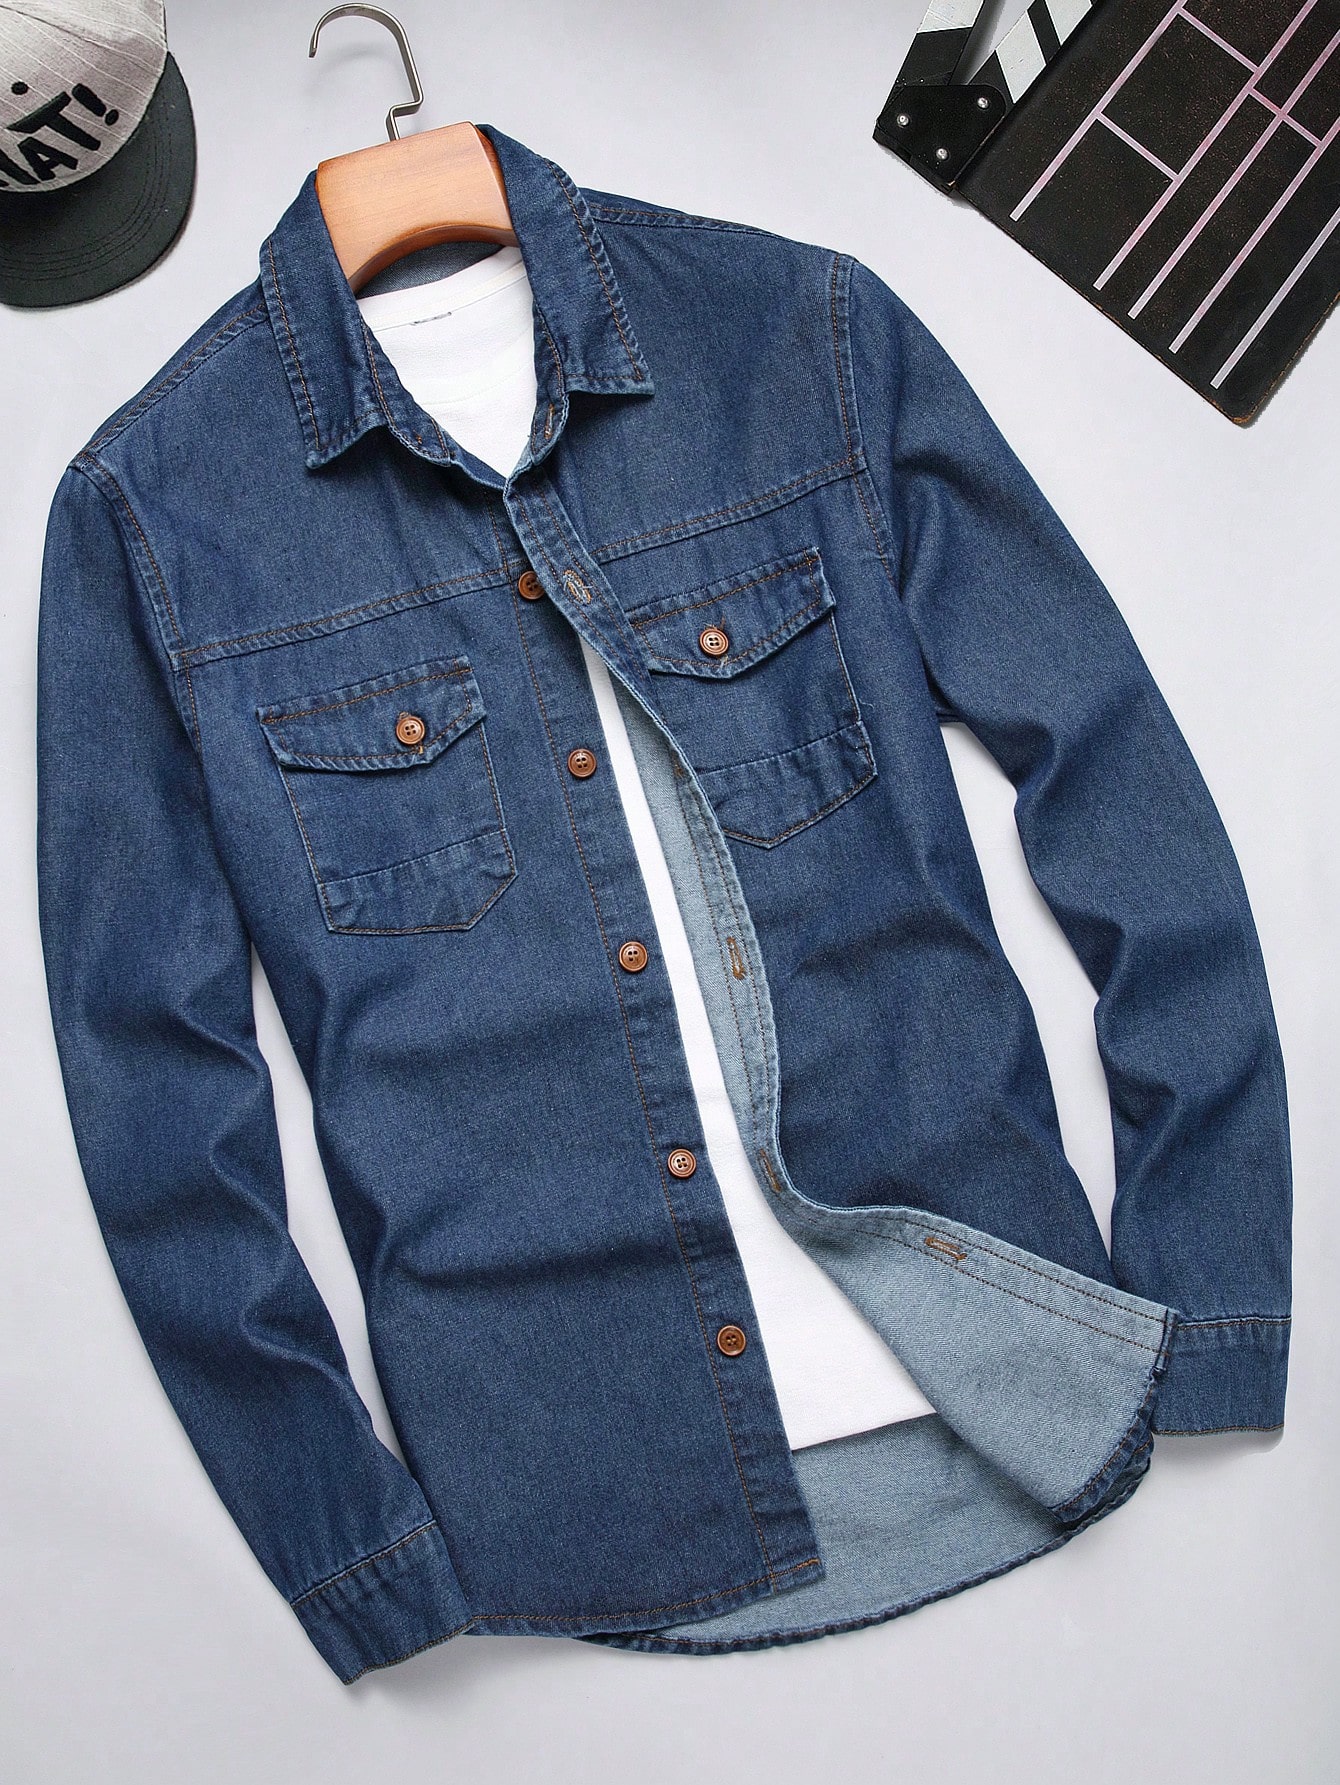 цена Мужская джинсовая рубашка с длинными рукавами и карманами на клапане Manfinity Homme, синий